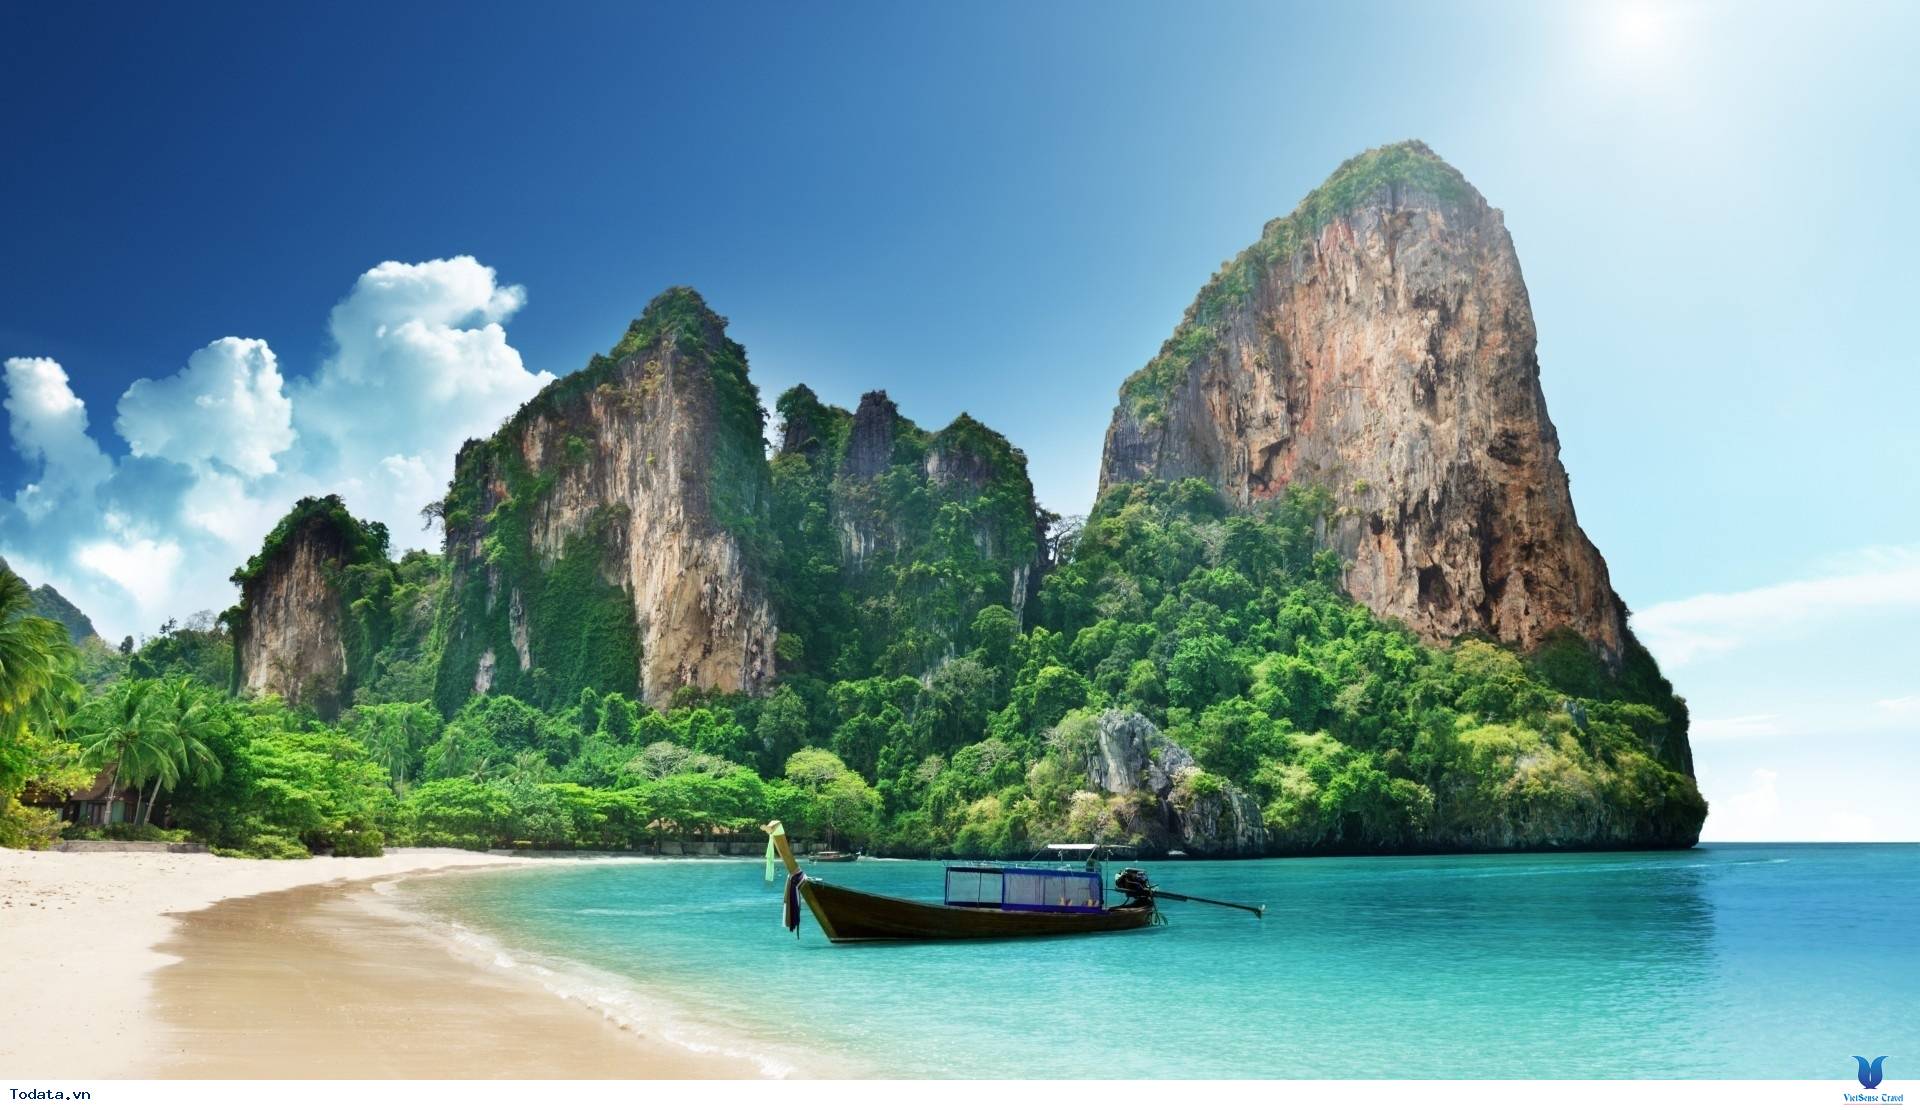 Bán đảo Railay tuyệt đẹp ở Thái Lan